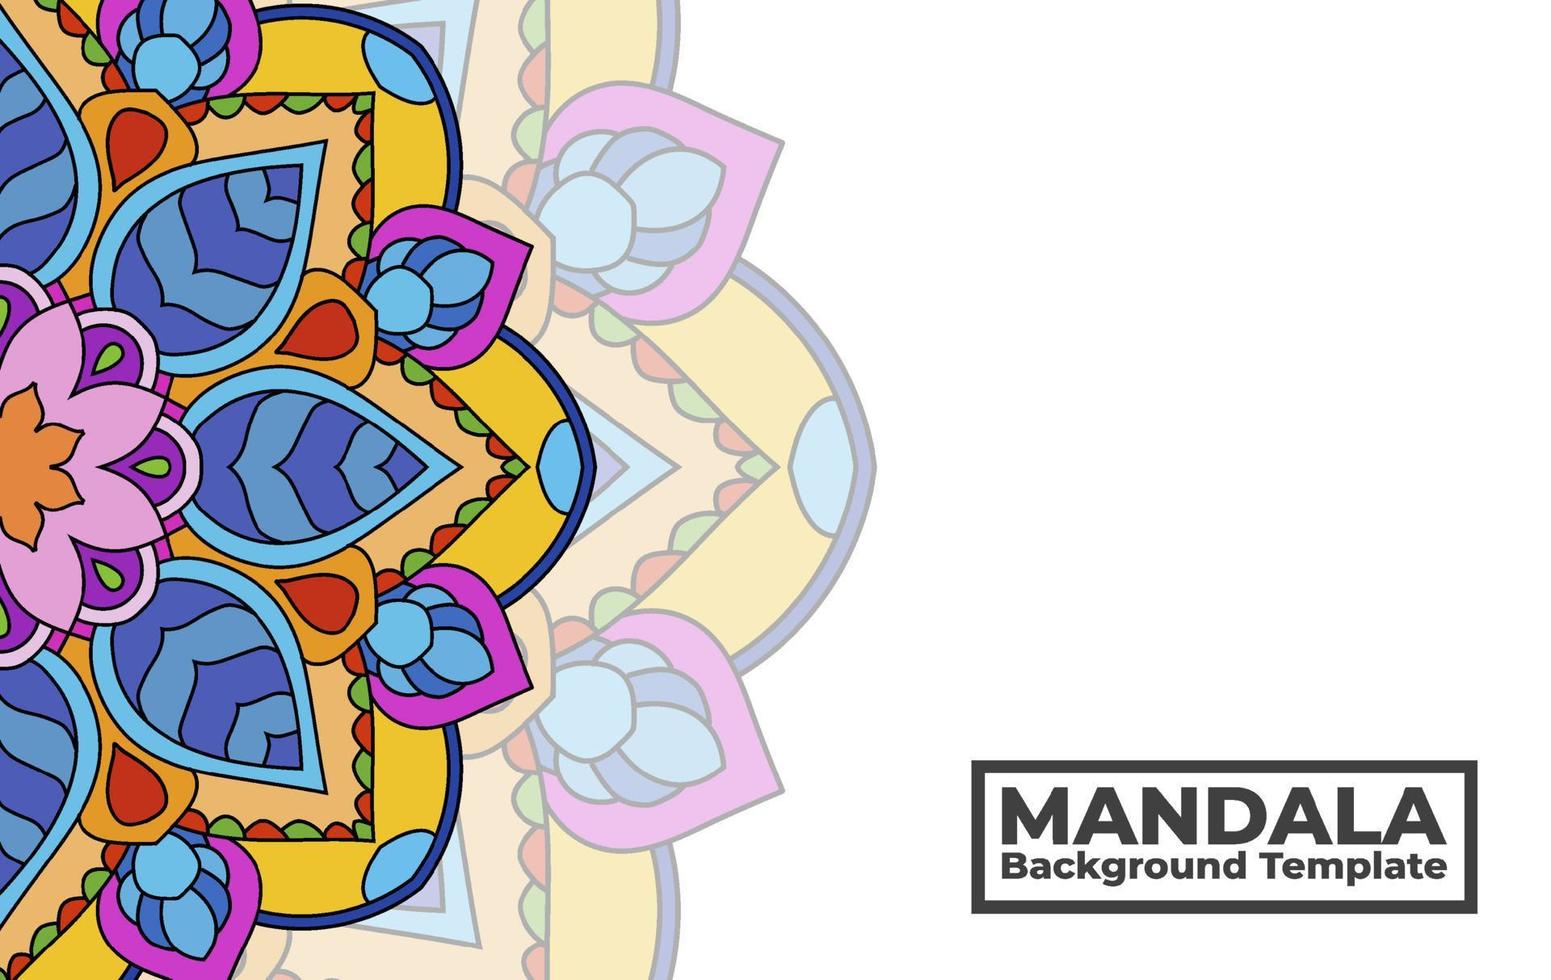 vector achtergrond sjabloon met sier- mandala patroon ontwerp, decoratief bloem mandala banier met plaats voor teksten